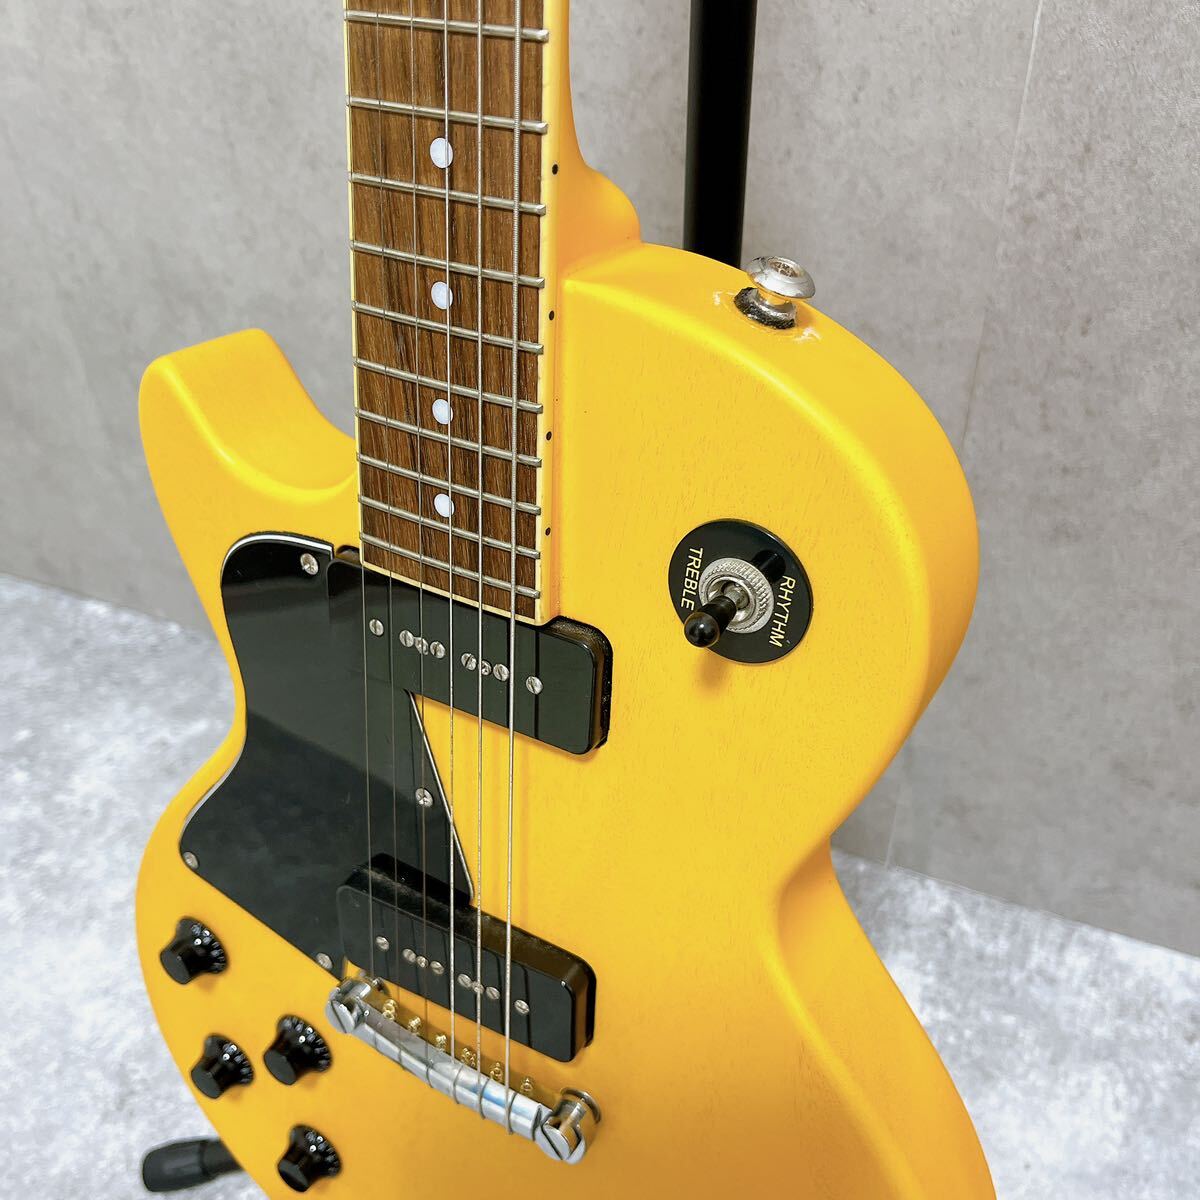 グラスルーツ レスポールスペャル 左利き レフティ TVイエロー Yellow 黄色 ESP Grass Roots エレキギター G-LS-57_画像3